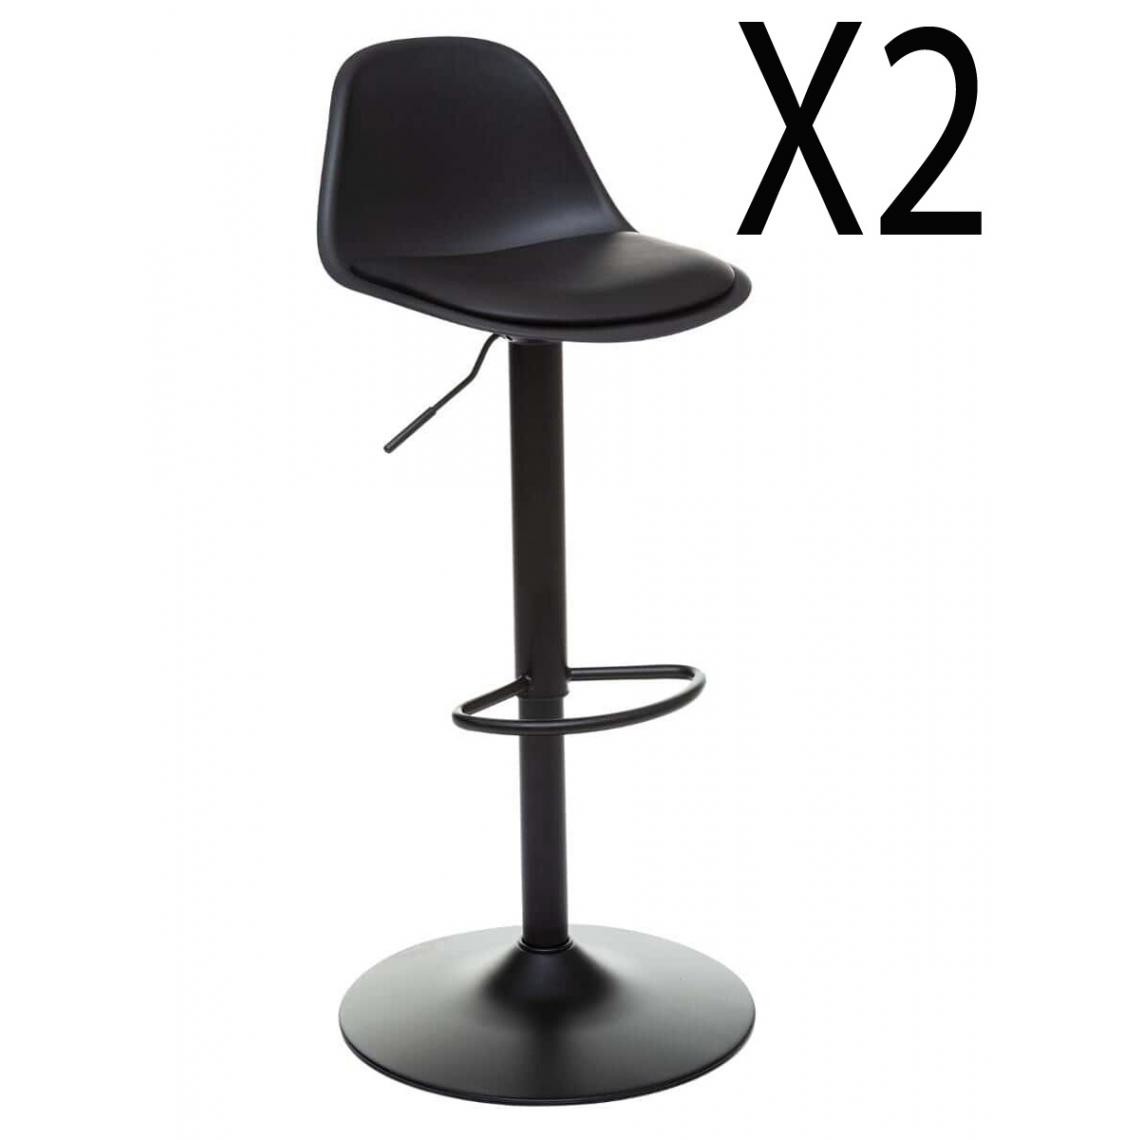 Pegane - Lot de 2 chaises de bar en polypropylène coloris noir - Diamètre 45 x Hauteur 103 cm - Tabourets